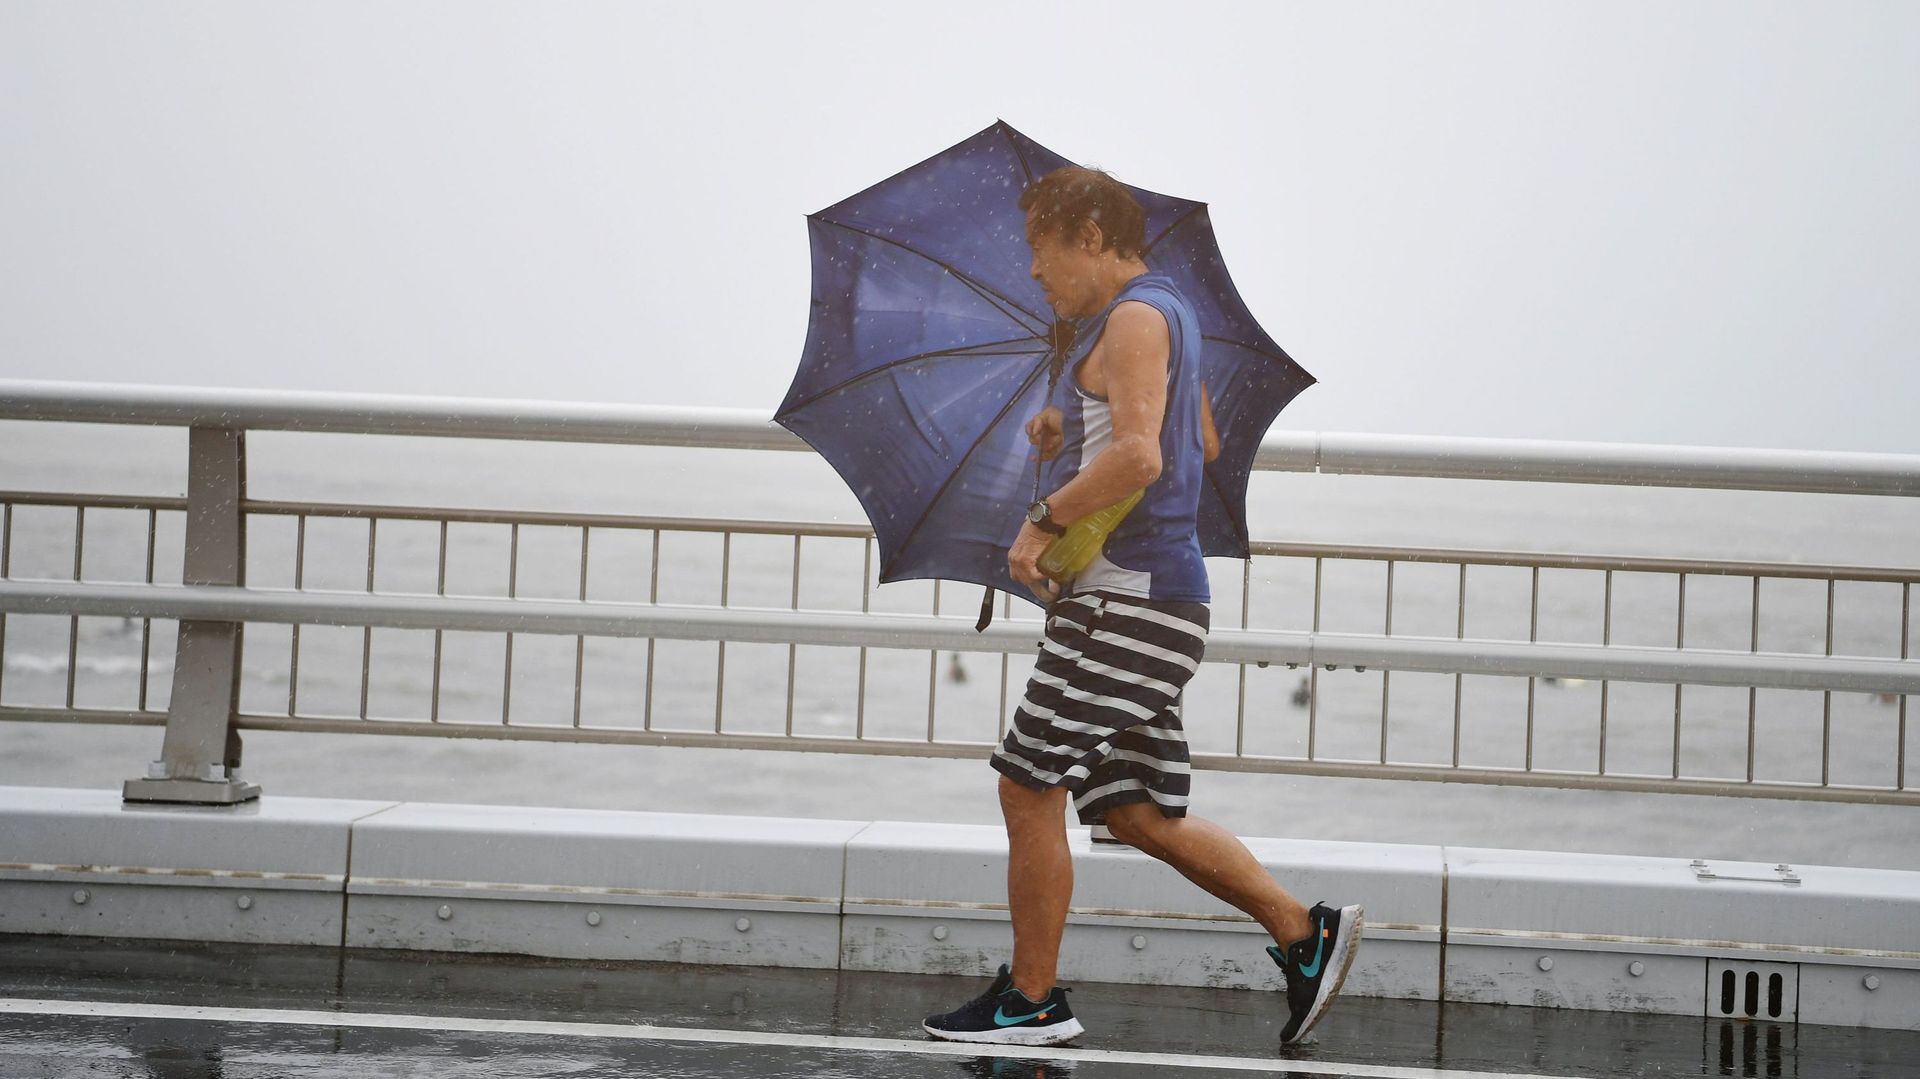 Japon: un mort et des blessés légers au passage du cyclone tropical Krosa